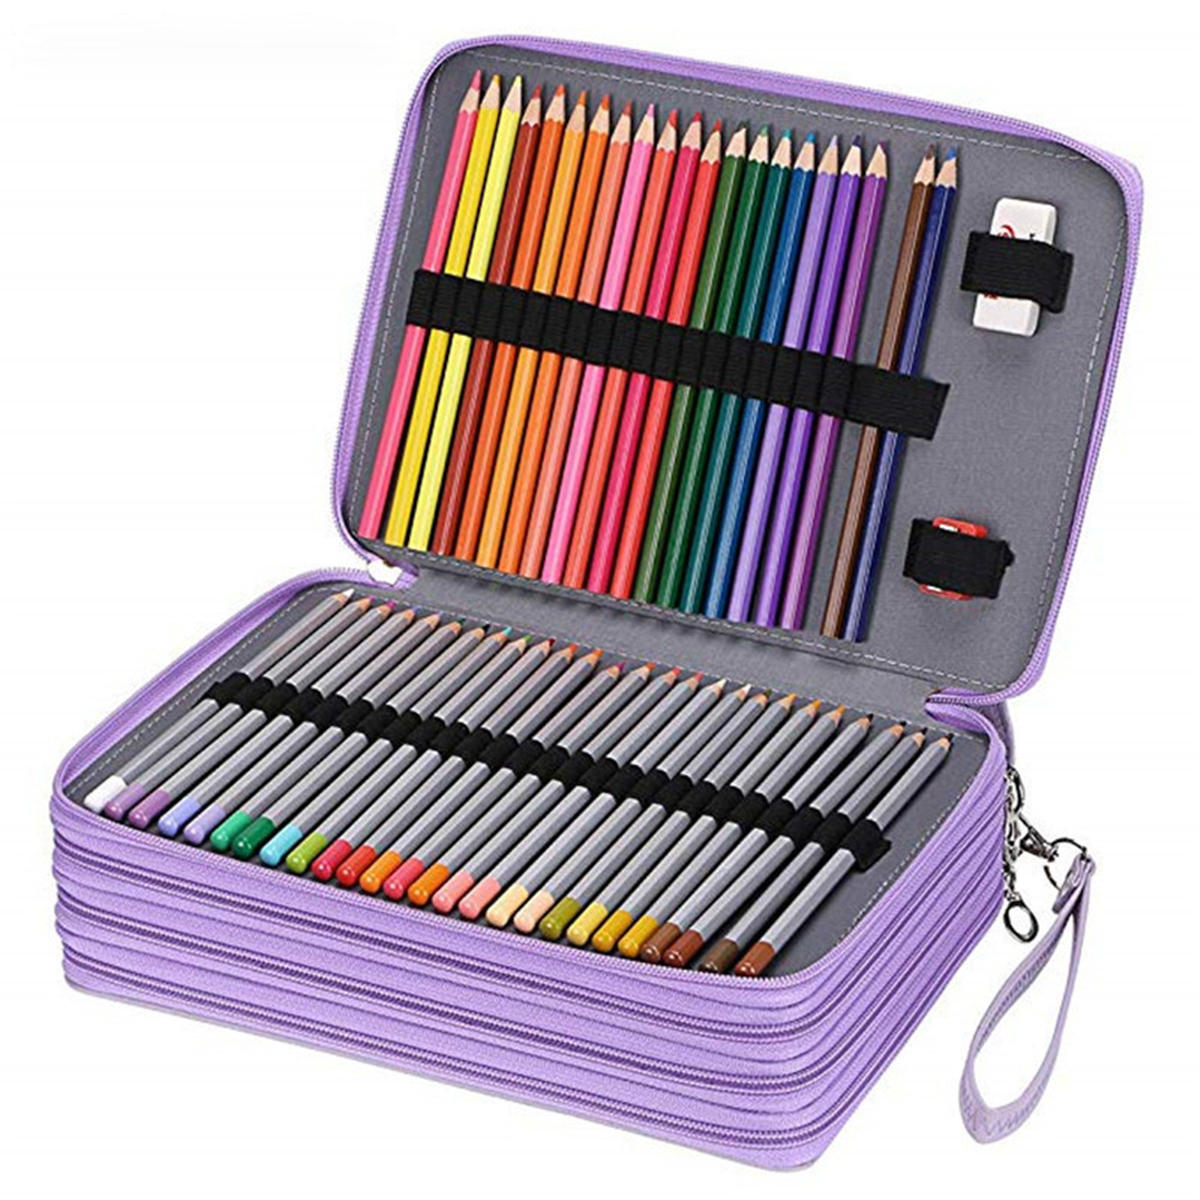 

184 слота цветной карандаш Чехол большой емкости Soft и кожаный держатель для карандашей Органайзер с ручкой для перенос